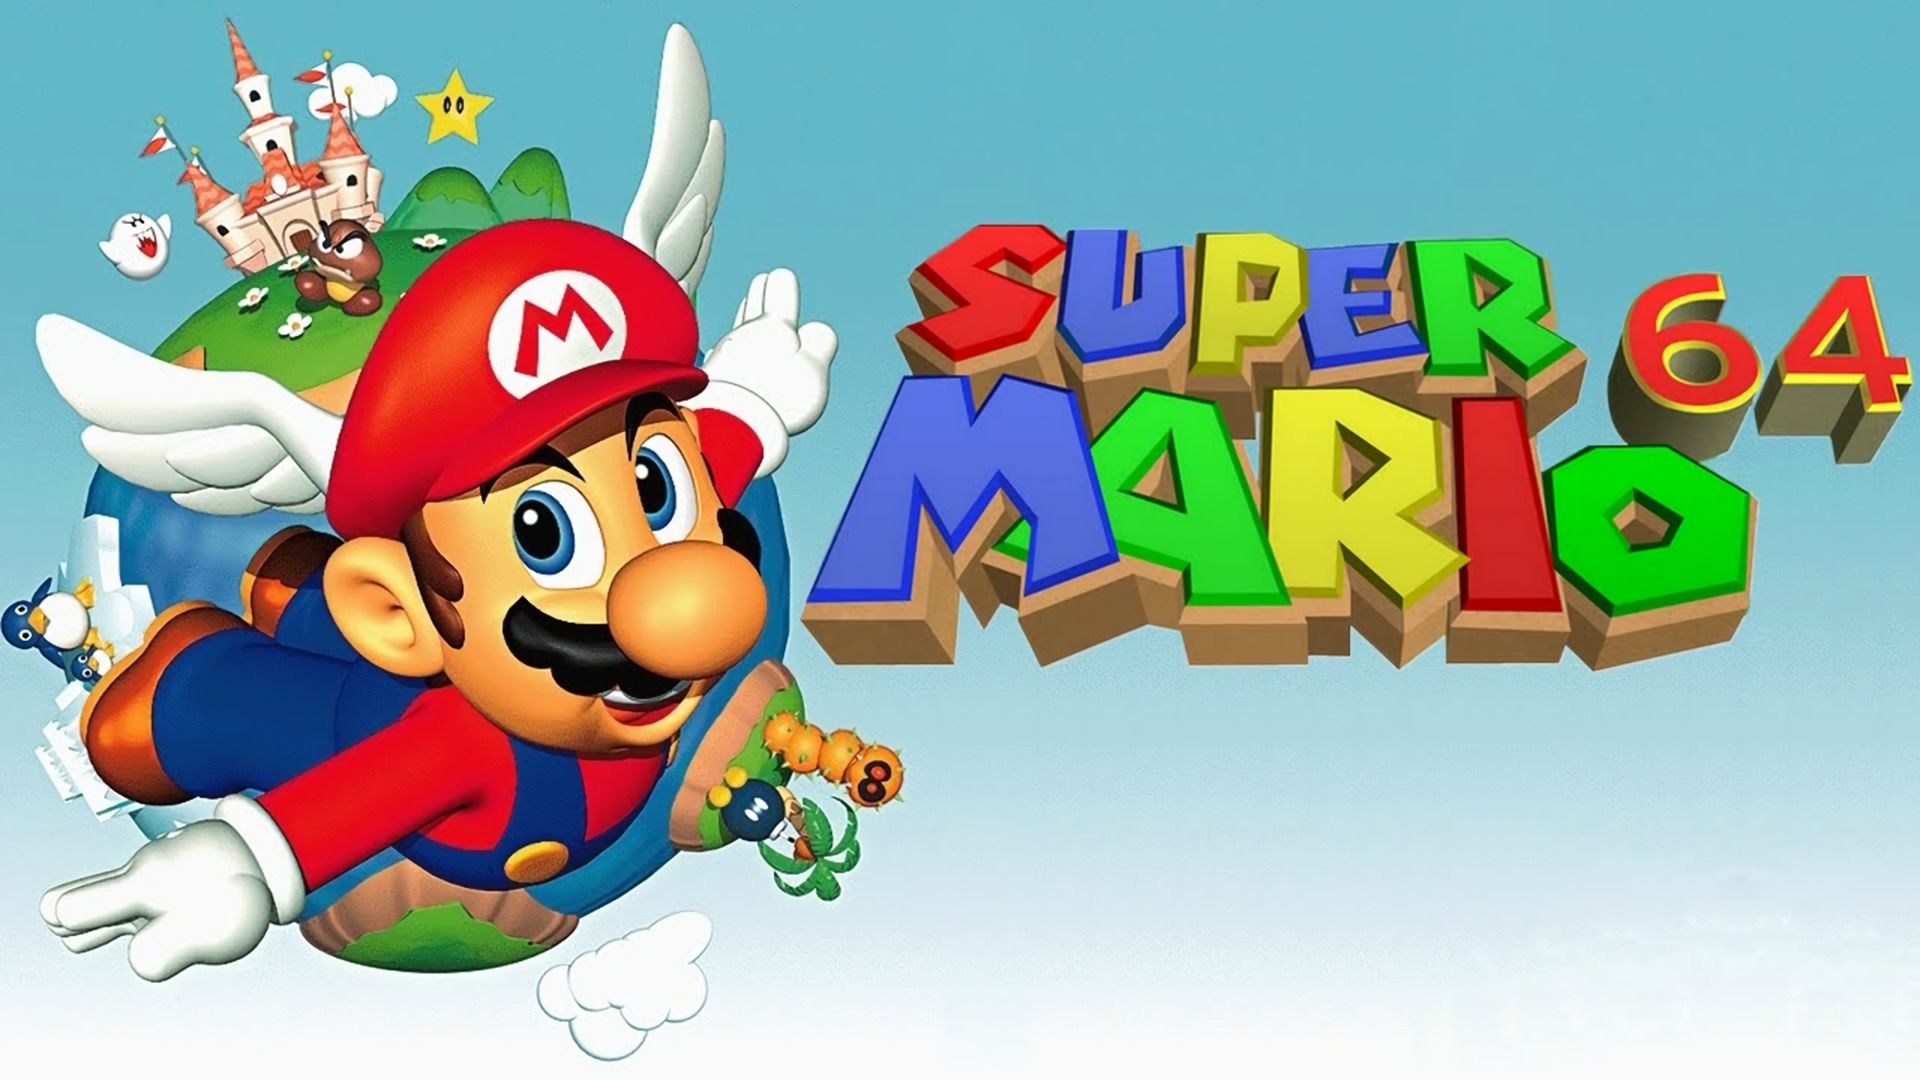 Популярные заставки и фоны Супер Марио 64 на компьютер